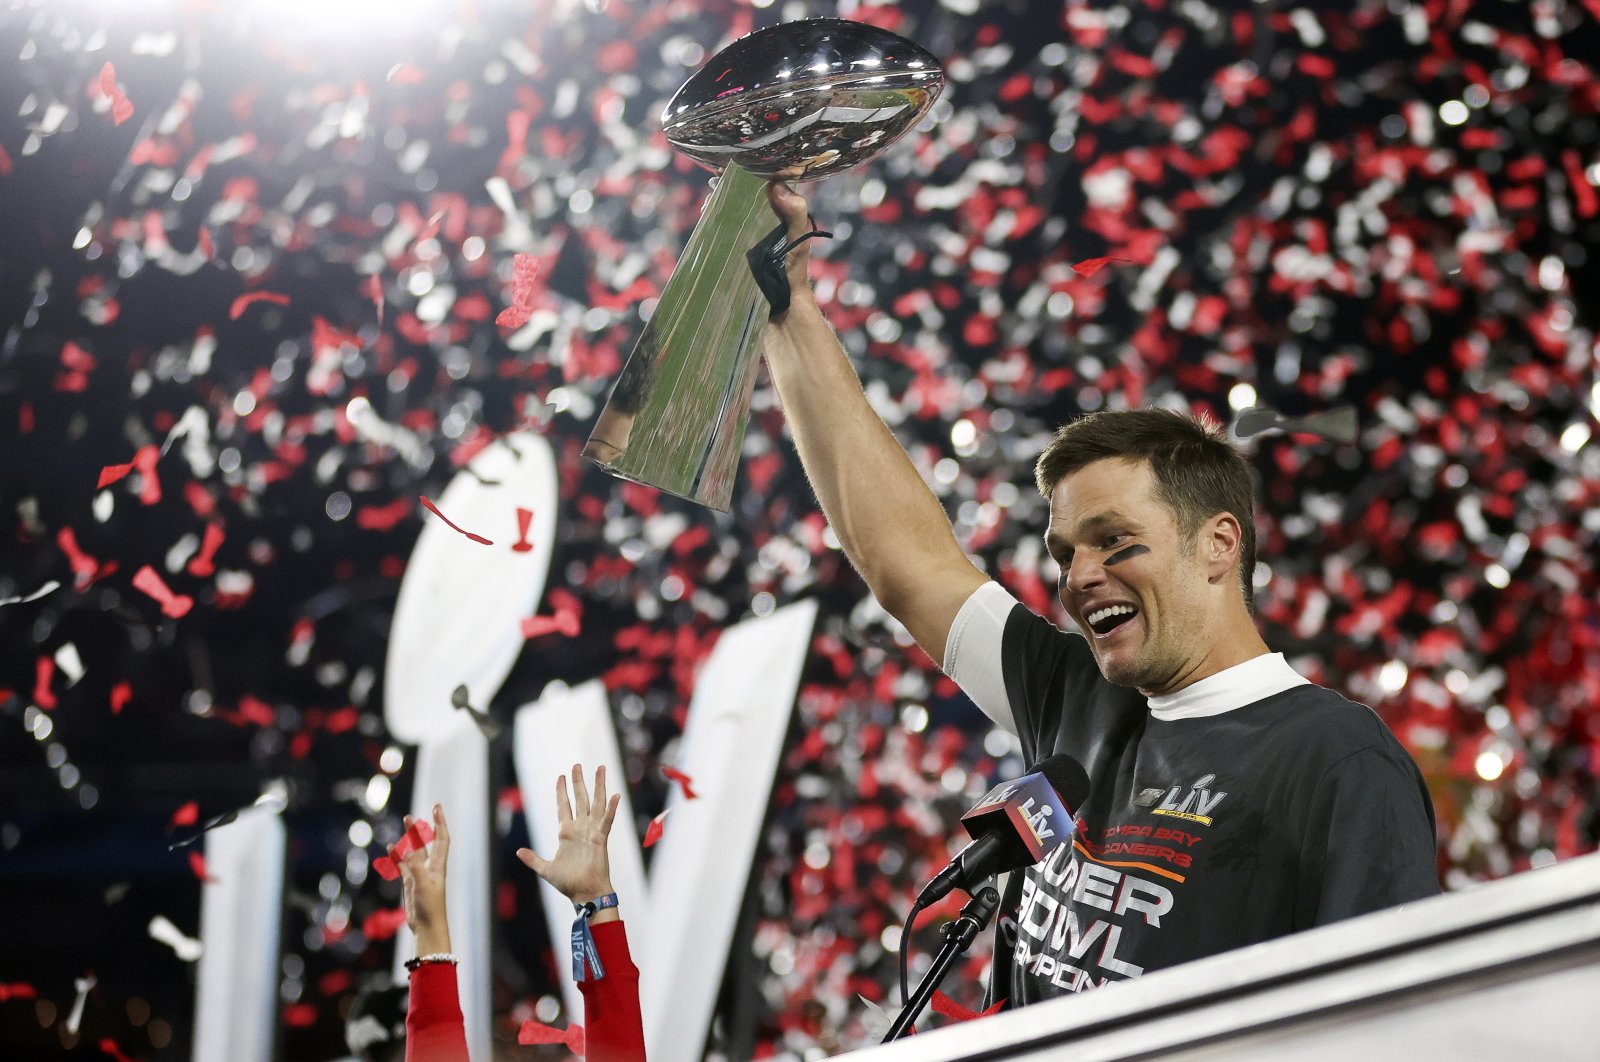 Tom Brady with the NFL MVP Trophy